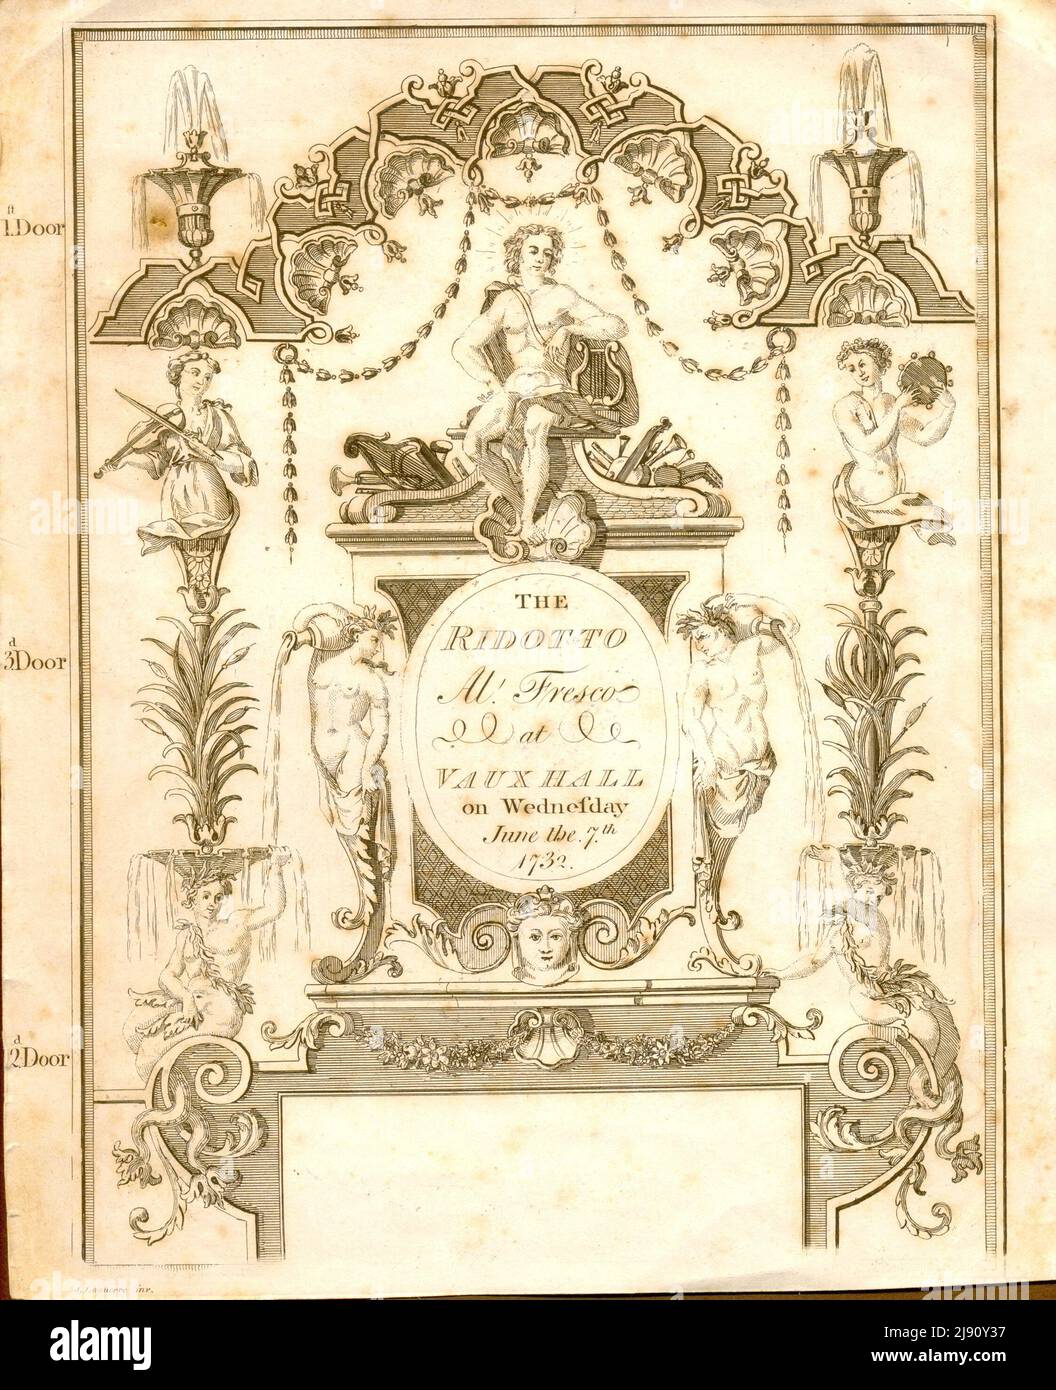 Billet pour le Ridotto Al Fresco à Vauxhall [Londres] le mercredi 7th 1732 juin Banque D'Images